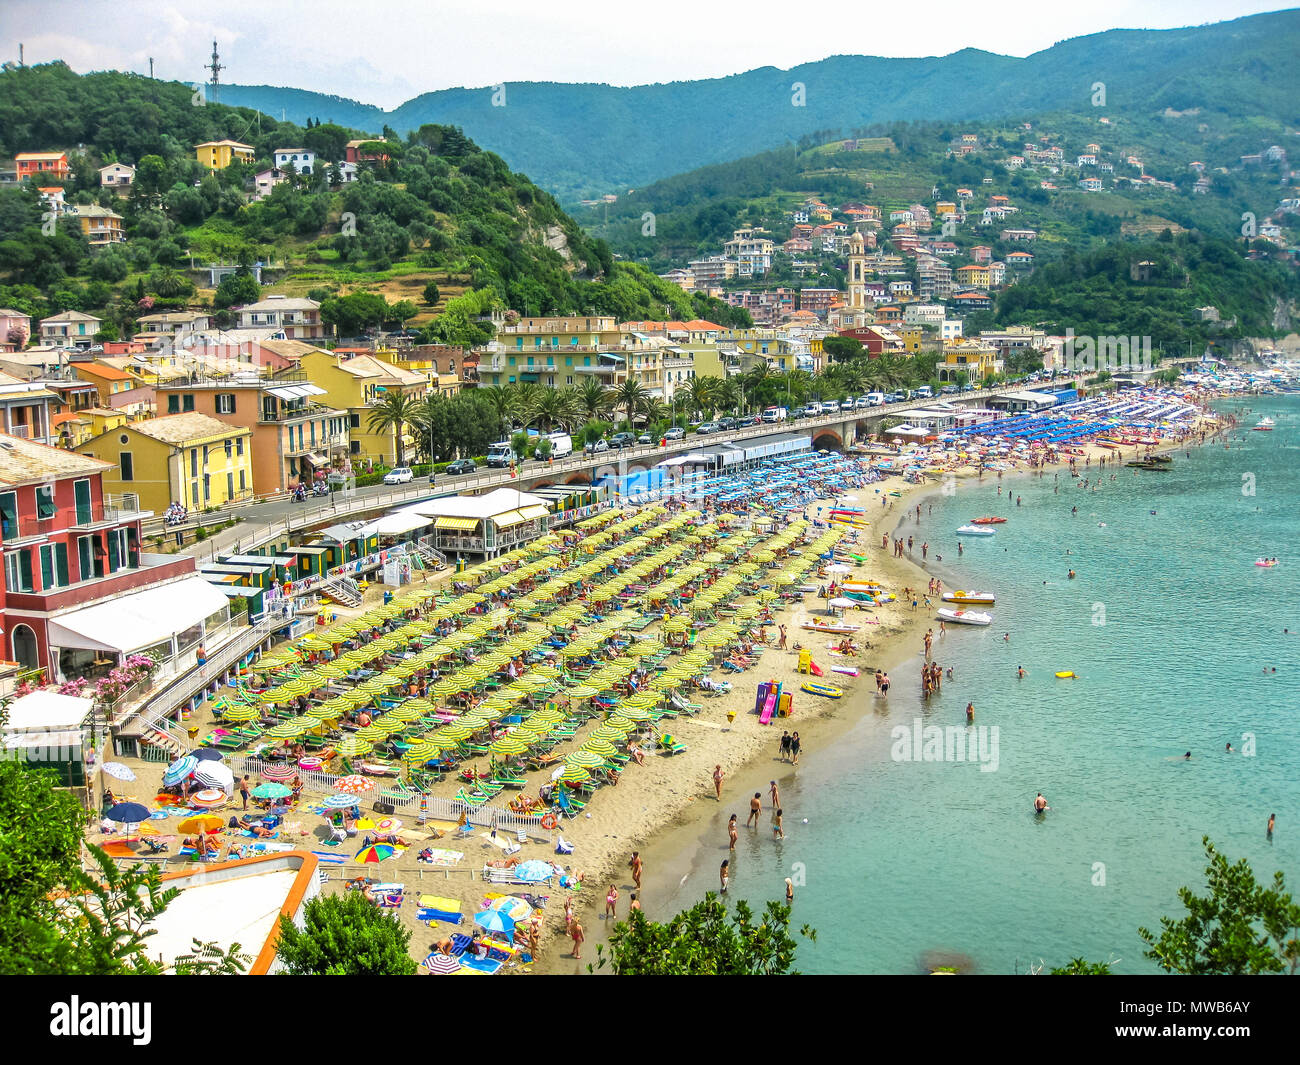 Moneglia Liguria Italia - circa giugno 2010: veduta aerea di una delle famose spiagge di località turistiche della costa ligure in estate. Foto Stock